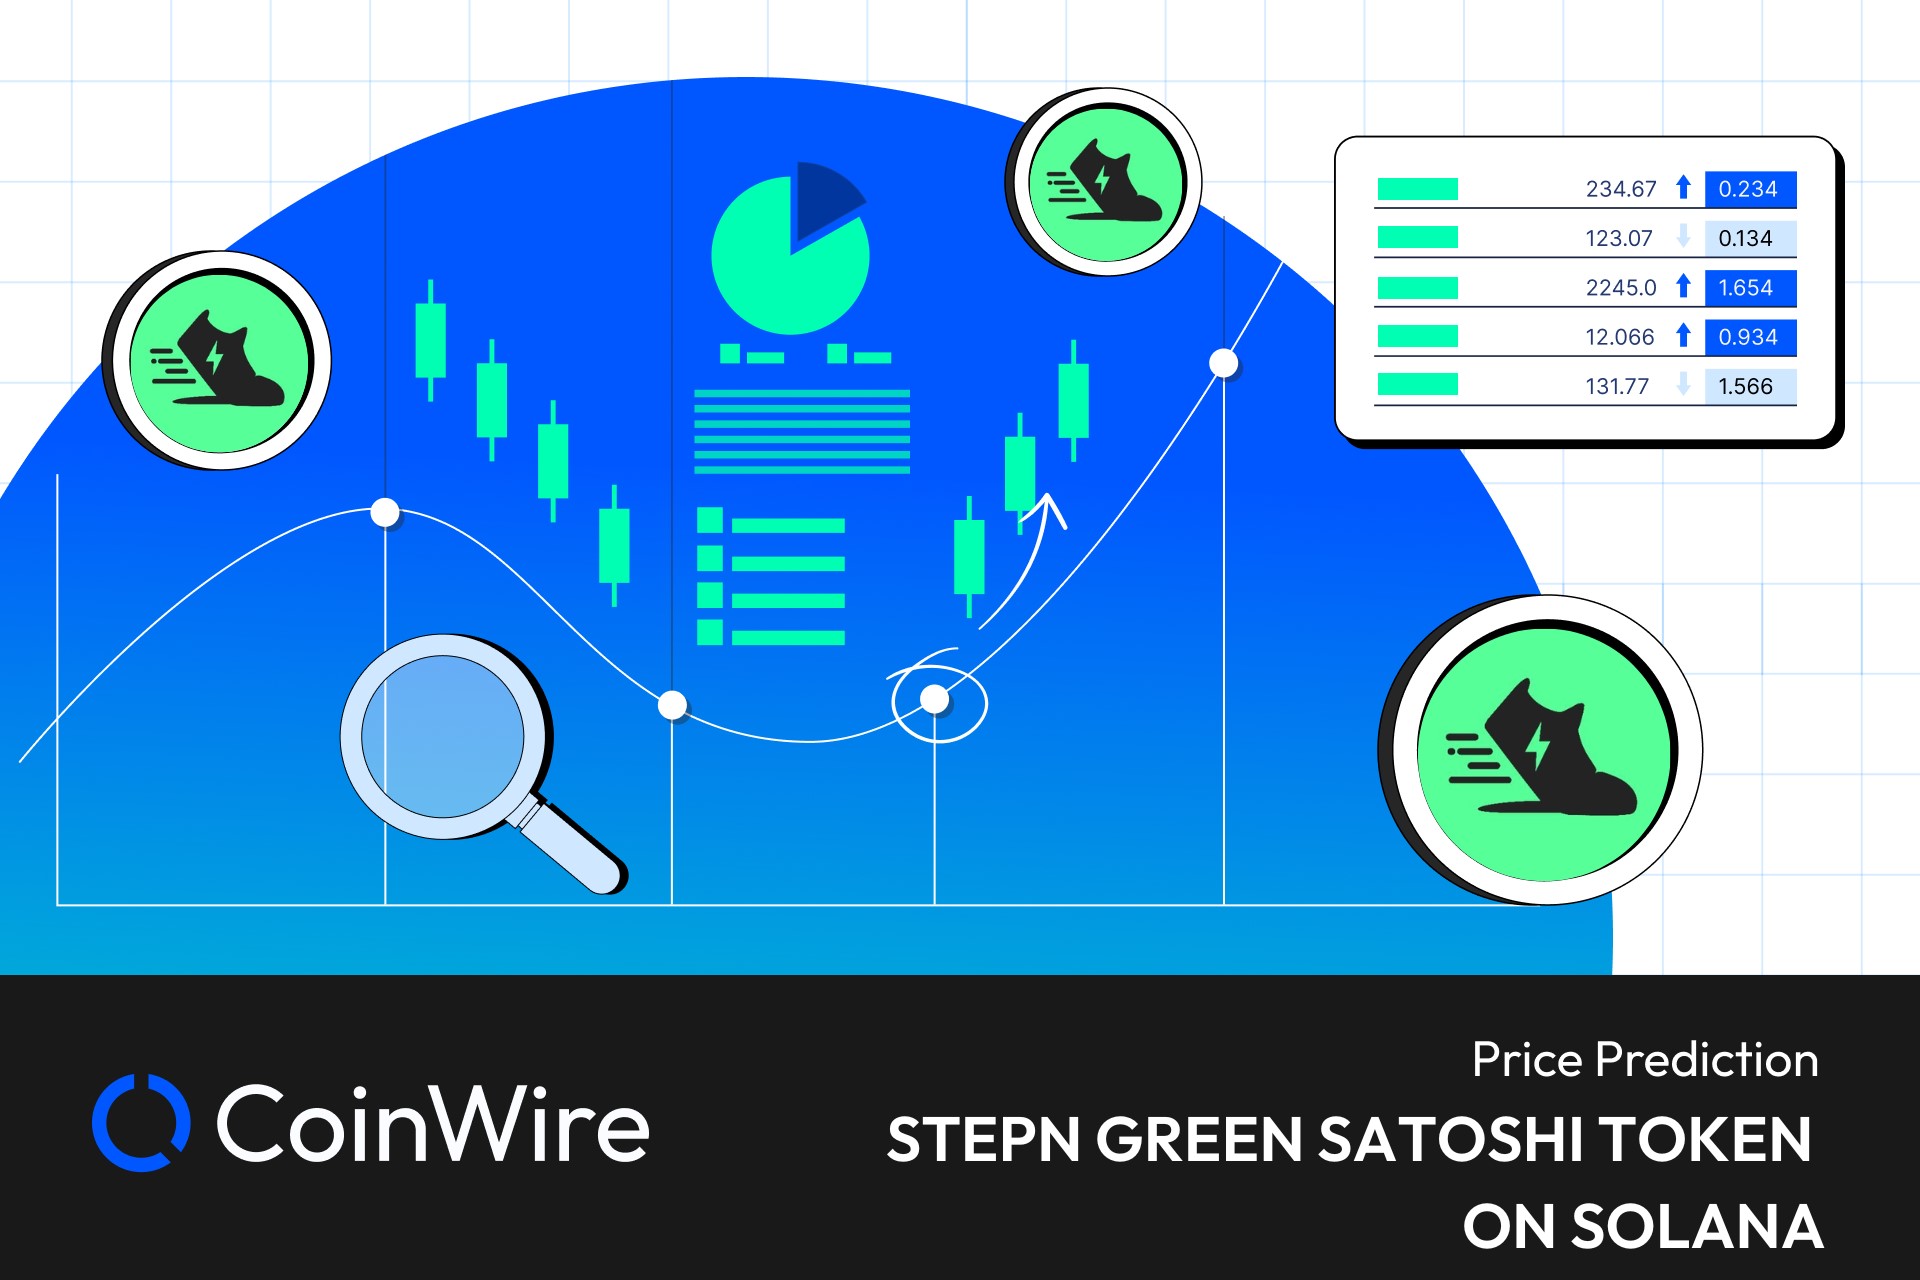 Stepn Green Satoshi Token On Solana Price Prediction